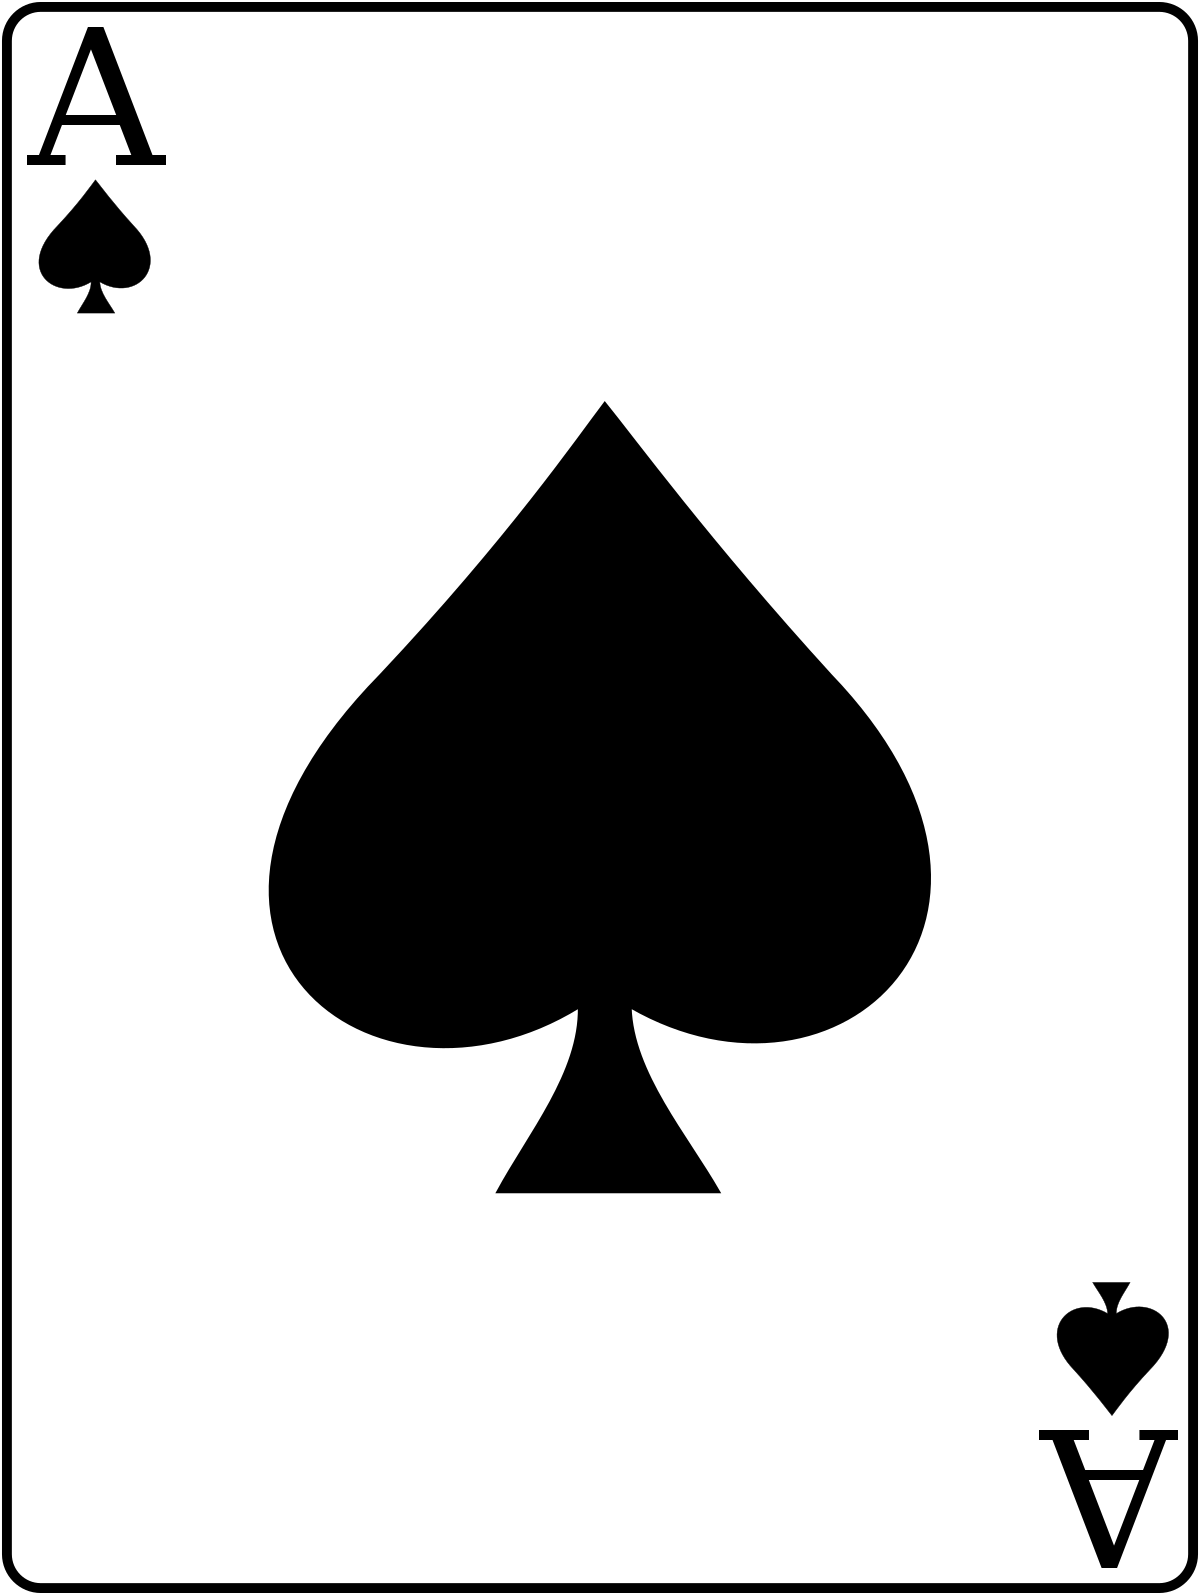 Spades card game.